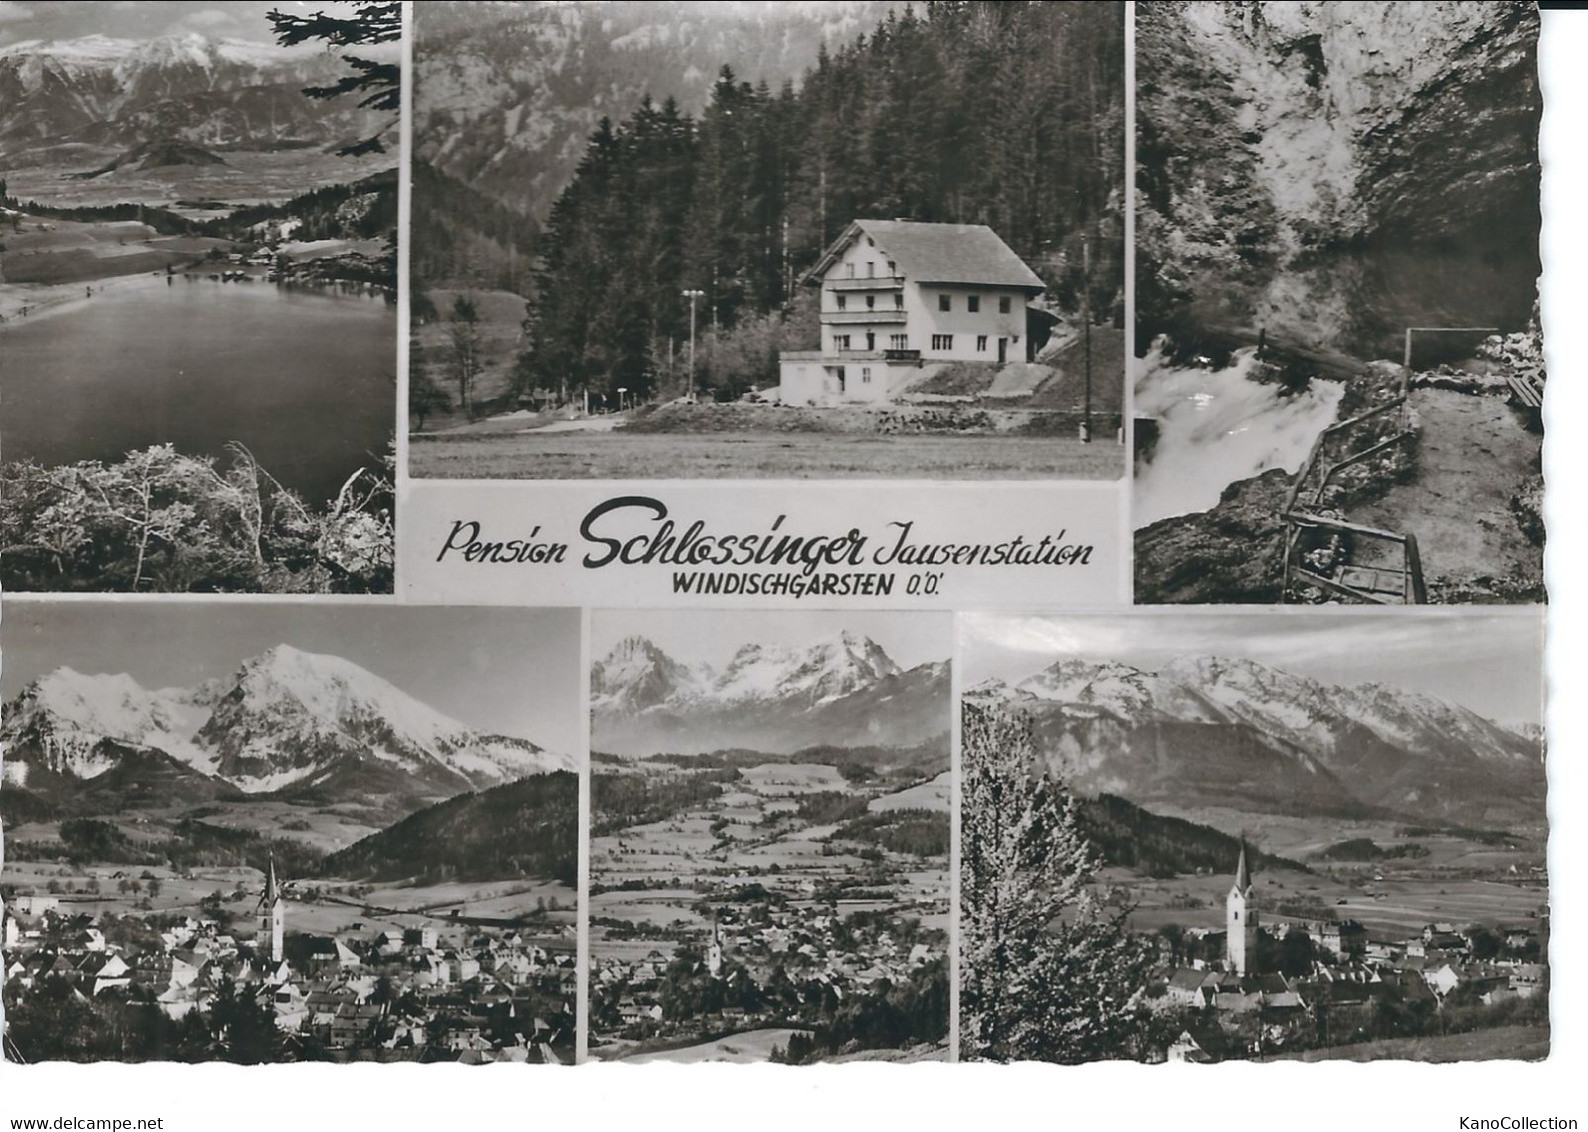 Pension Schlossinger, Windischgarsten, Gelaufen 1963 - Windischgarsten